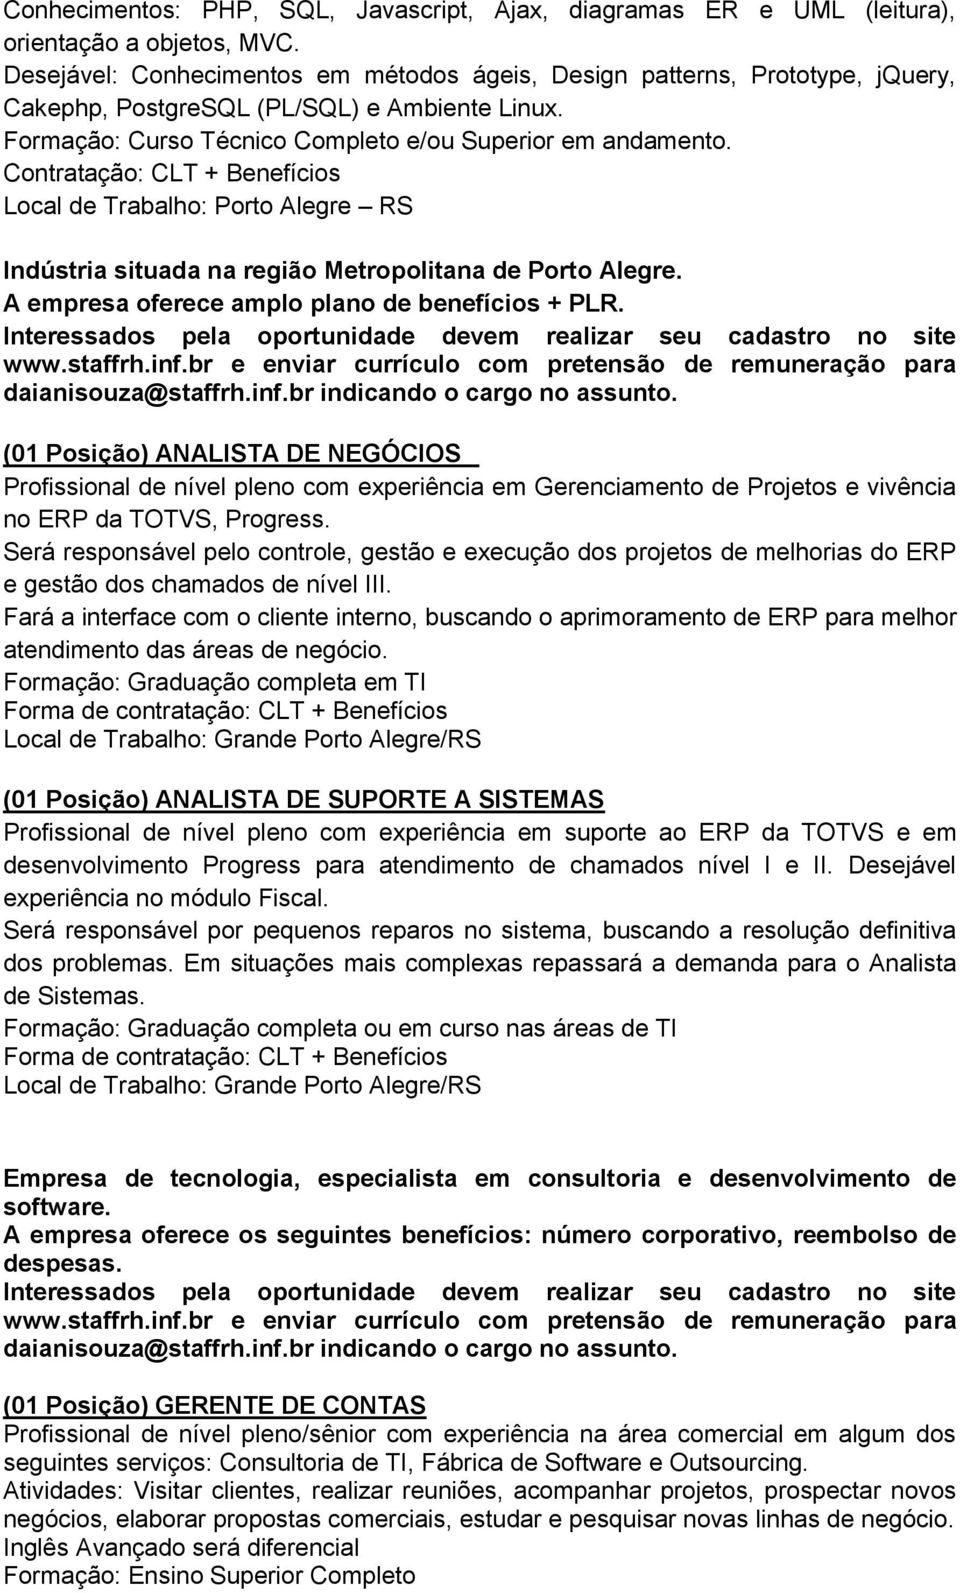 Contratação: CLT + Benefícios Local de Trabalho: Porto Alegre RS Indústria situada na região Metropolitana de Porto Alegre. A empresa oferece amplo plano de benefícios + PLR. daianisouza@staffrh.inf.